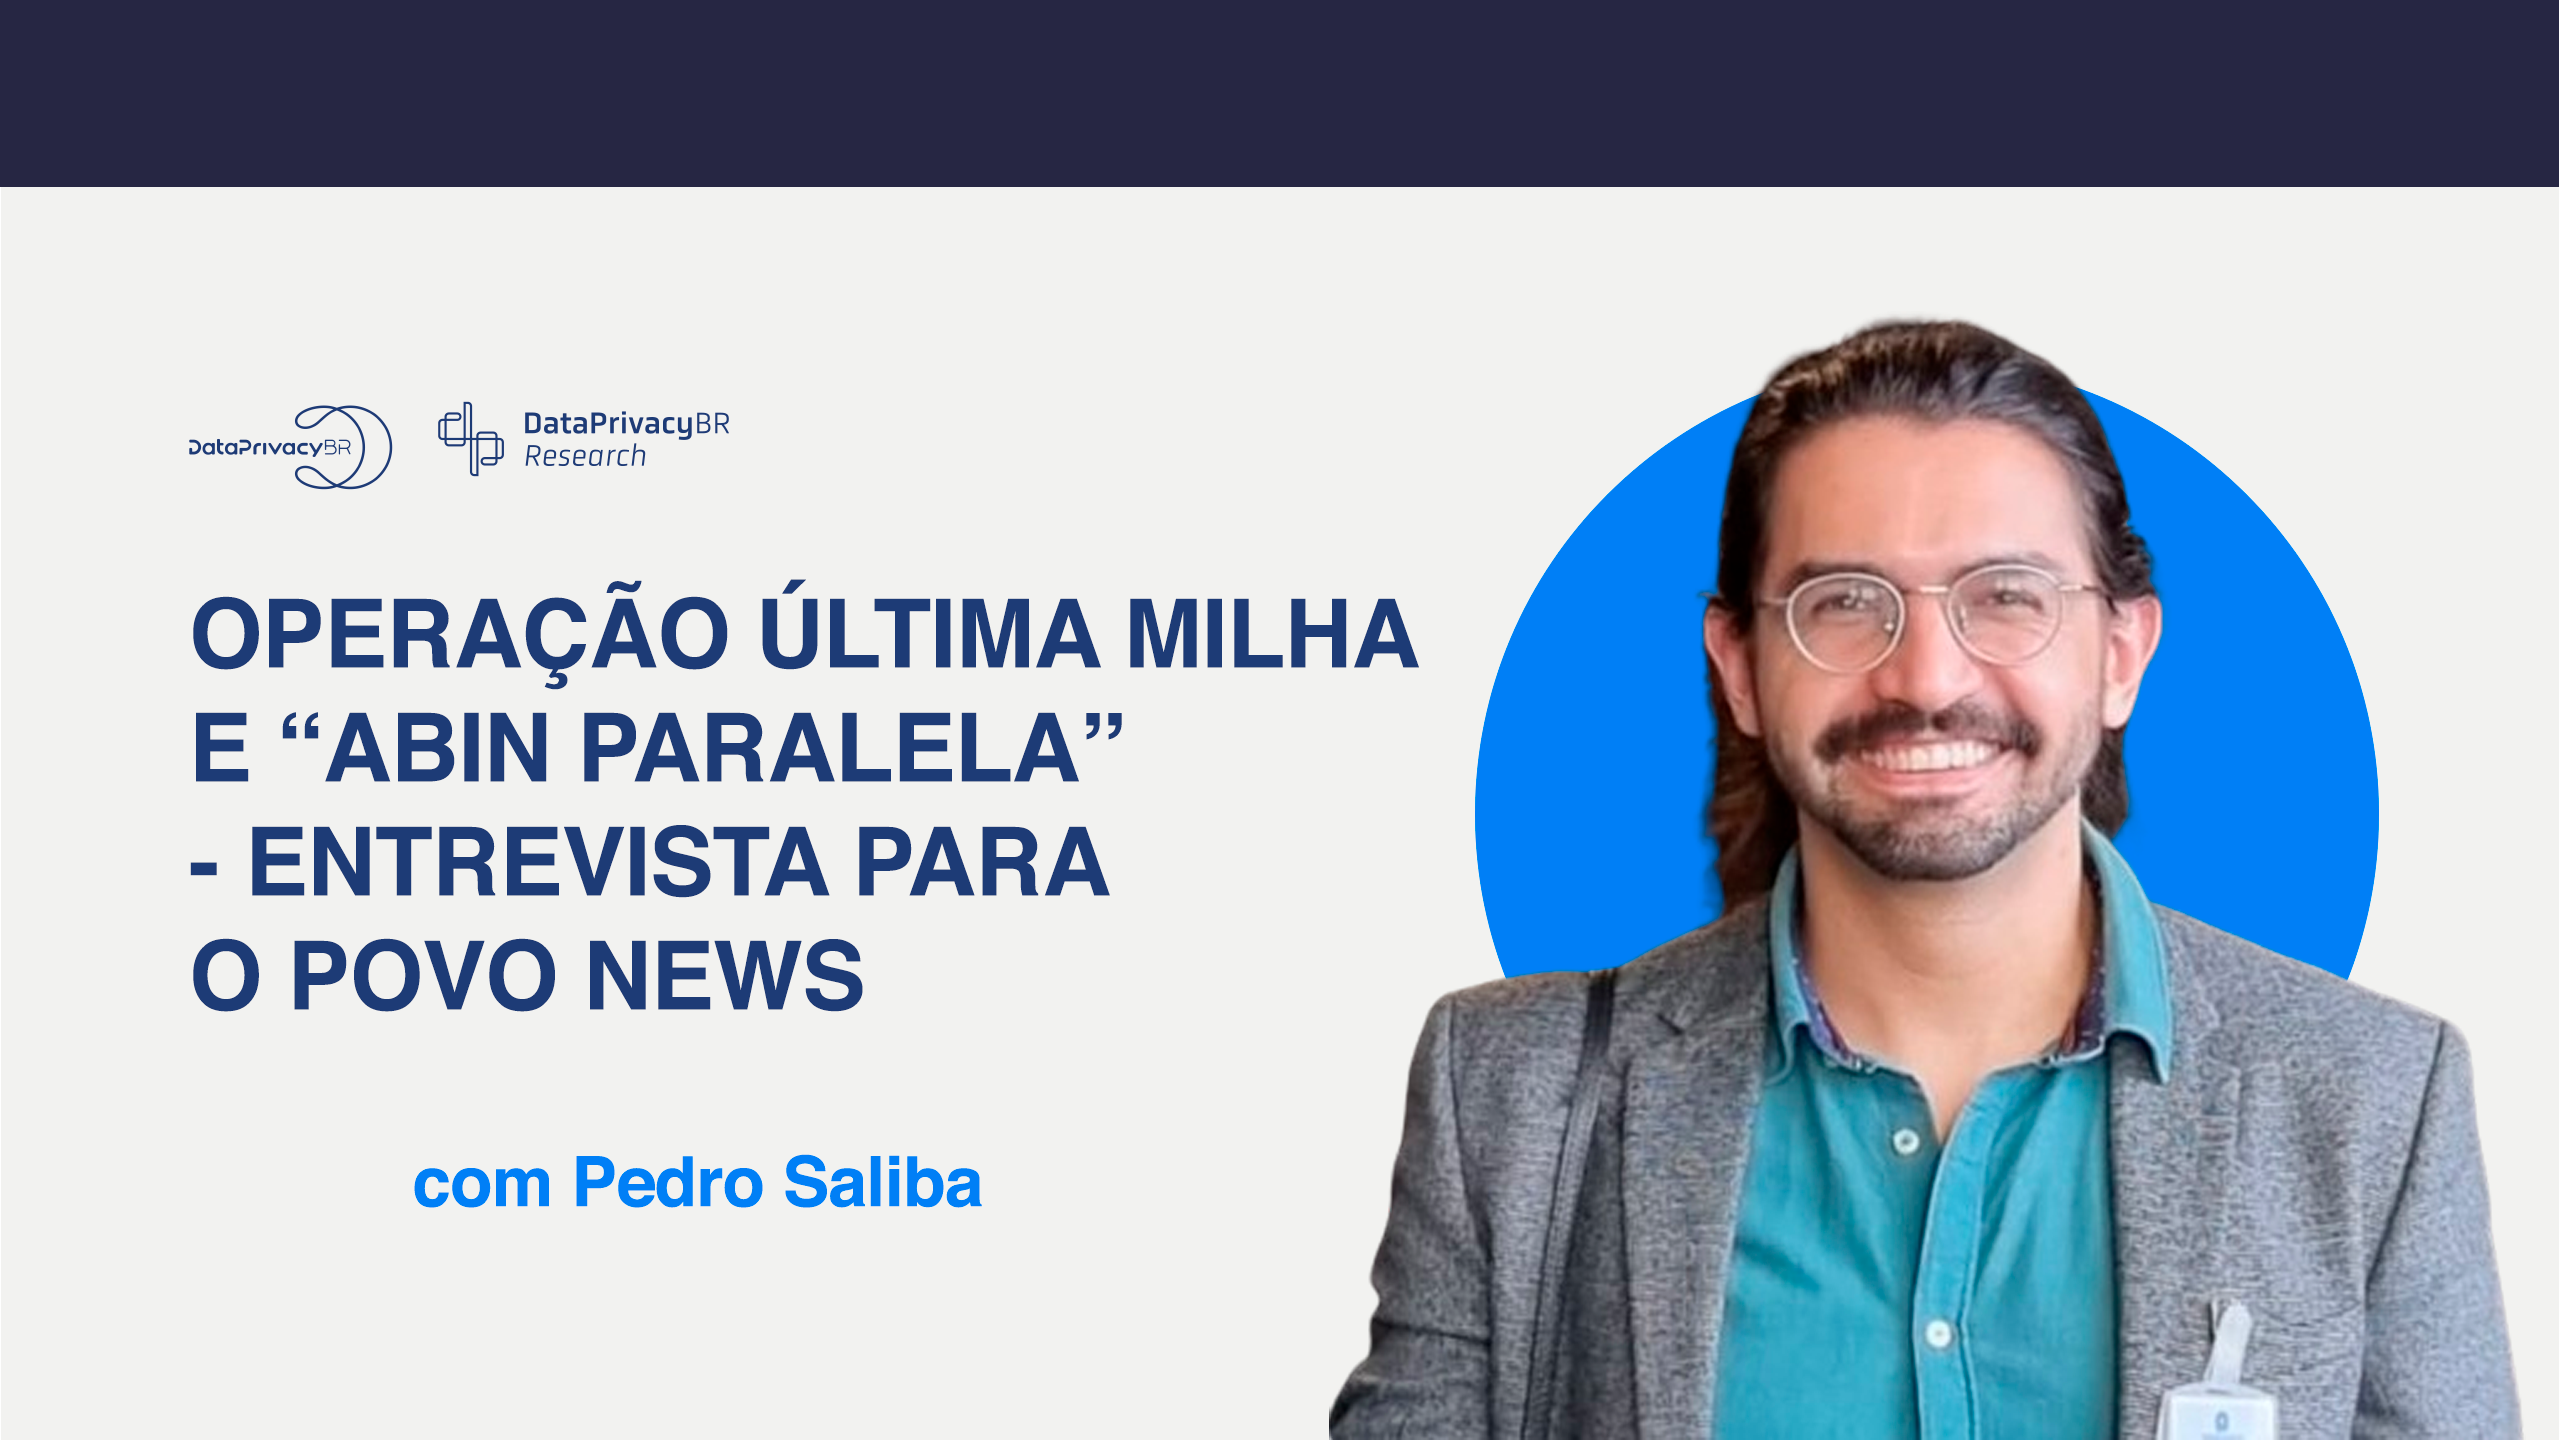 Operação Última Milha e “Abin Paralela” – entrevista de Pedro Saliba para O POVO News